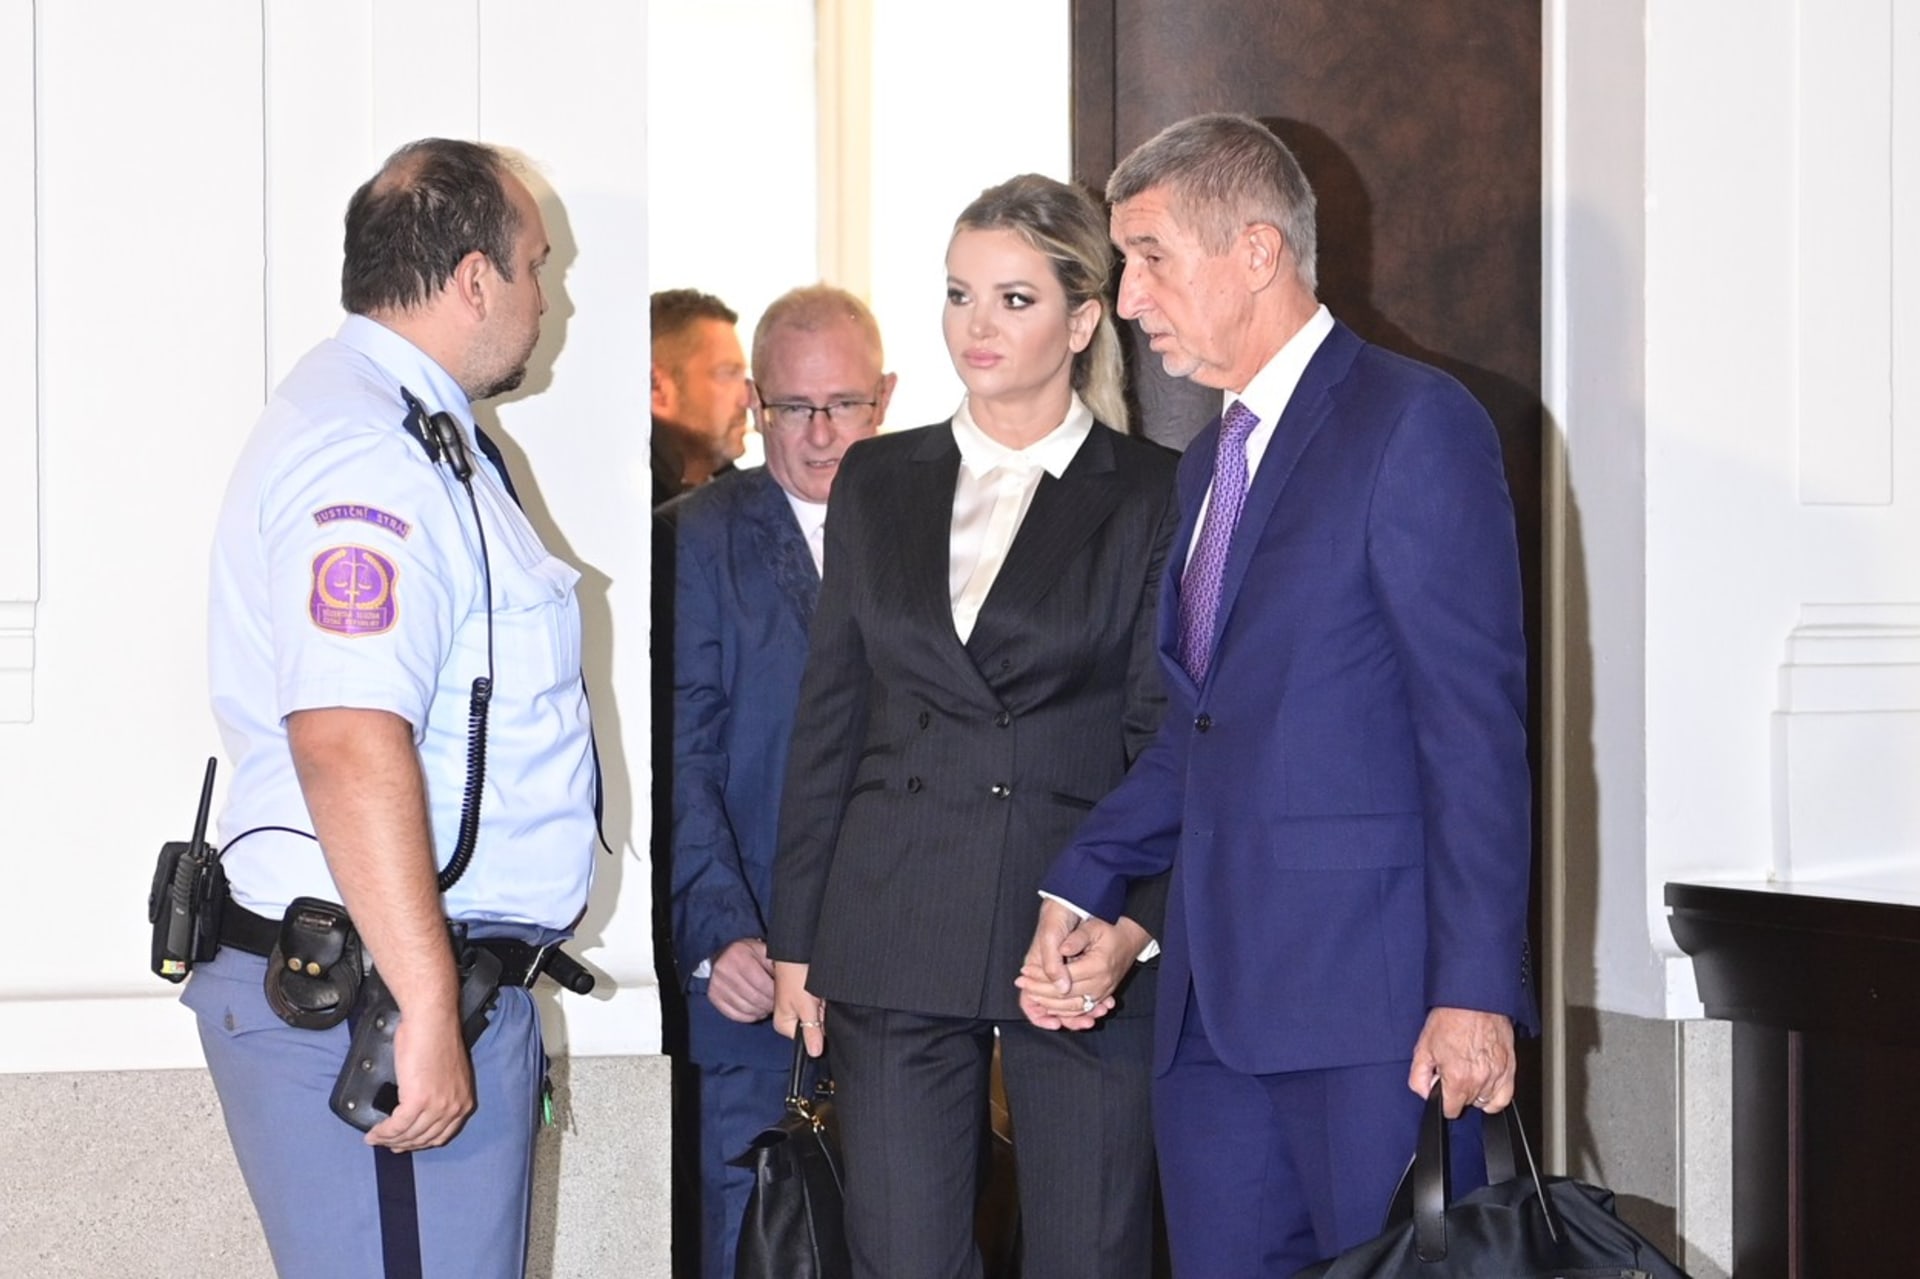 Expremiér Andrej Babiš (ANO) s manželkou Monikou Babišovou u soudu (14. 9. 2022)